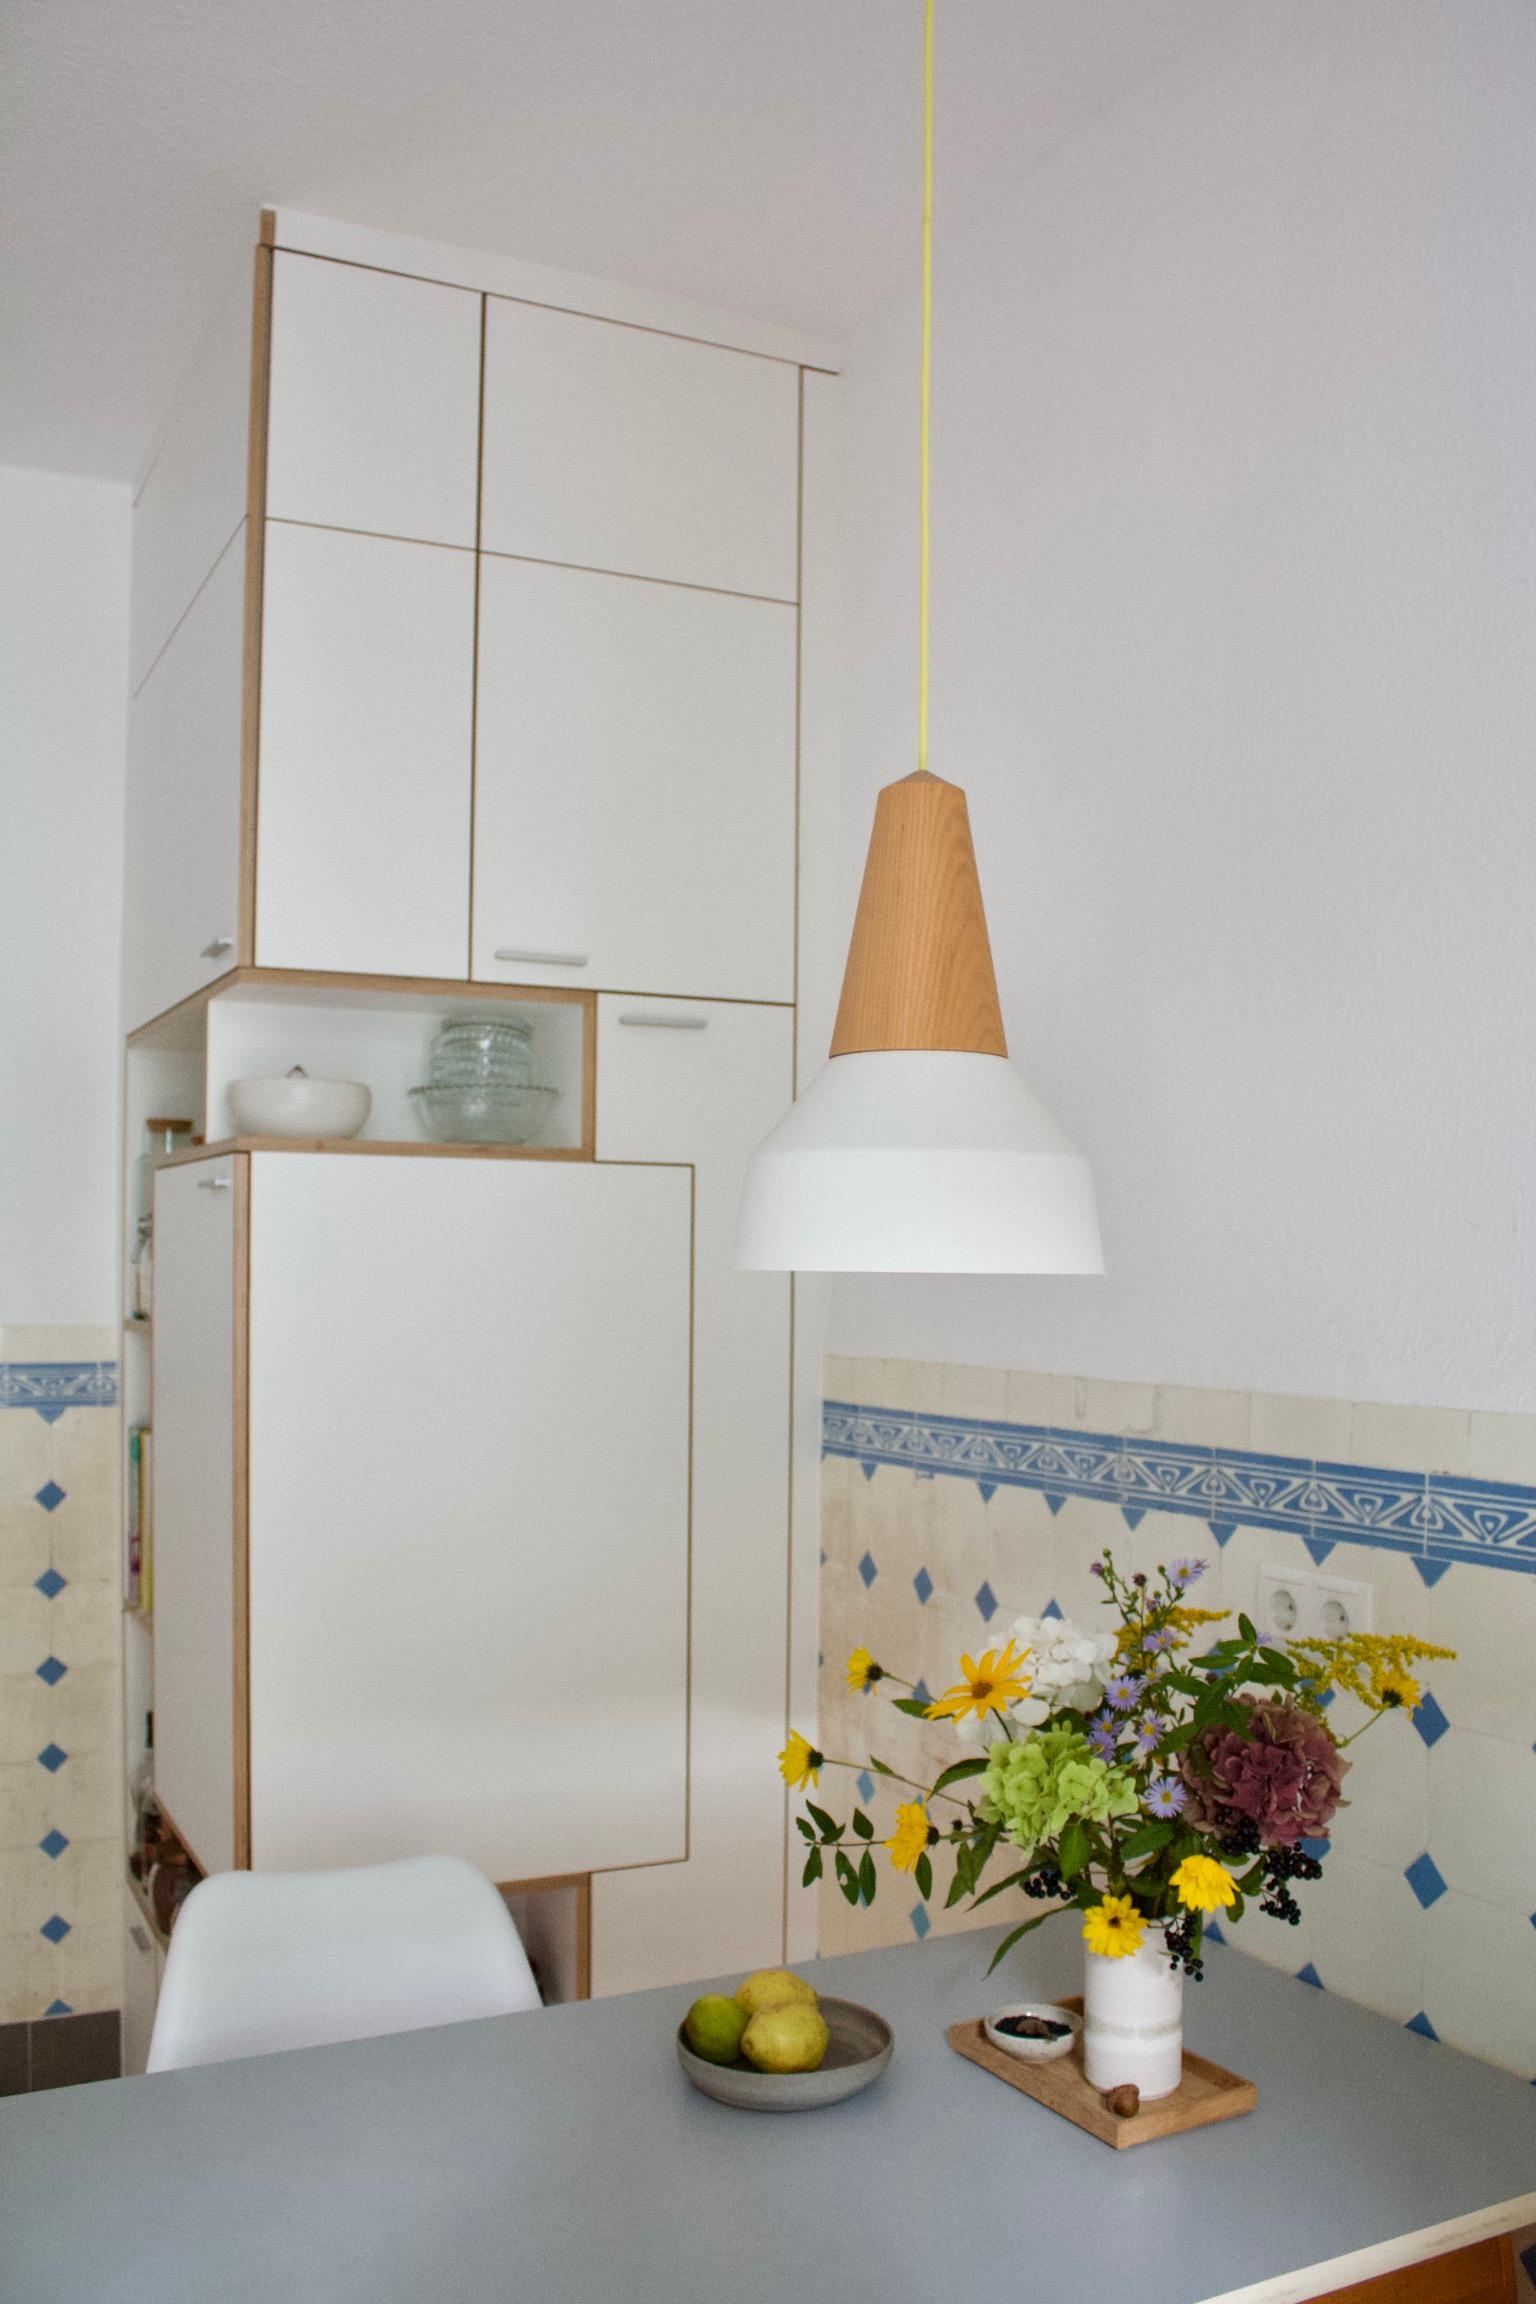 #küche #küchendesign #altbaufliesen #lampendesign #schneidstudio #wildblumen #midcentury #vintage #altbau #kleineküche